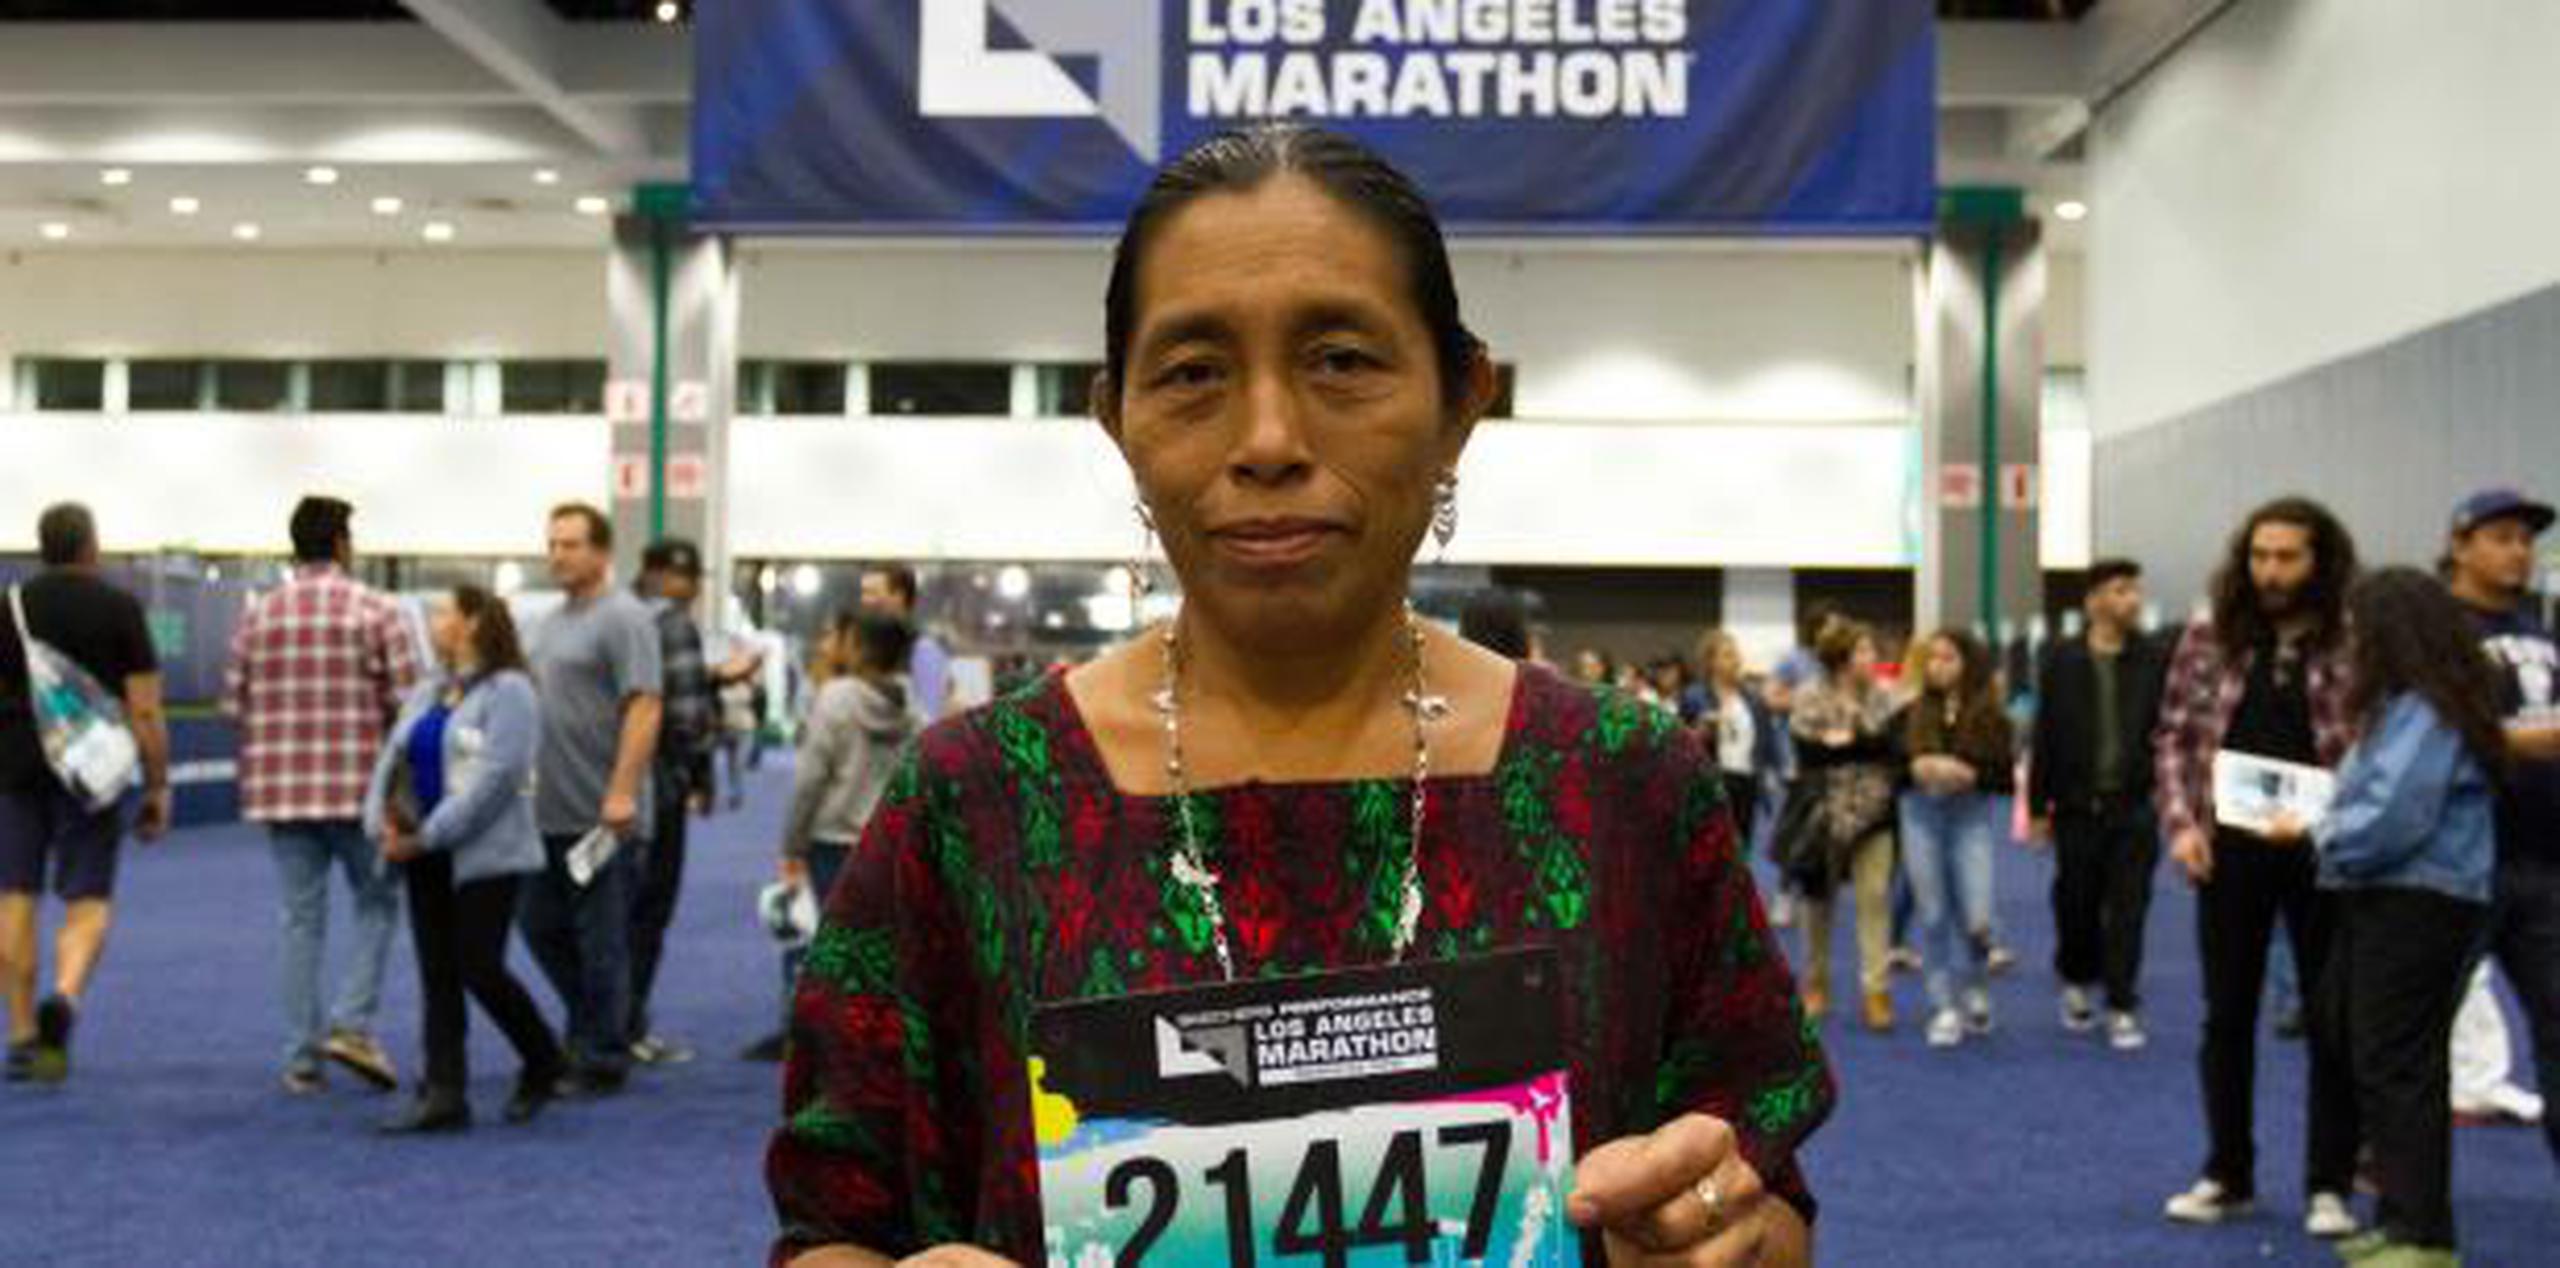 Con más de 24,000 atletas de todos los estados, y de más de 60 países, la 34 edición del Maratón de Los Ángeles ha sido la plataforma perfecta para que la guatemalteca, de la comunidad q'eqchi', hiciera escuchar su mensaje, según dijo. (EFE)